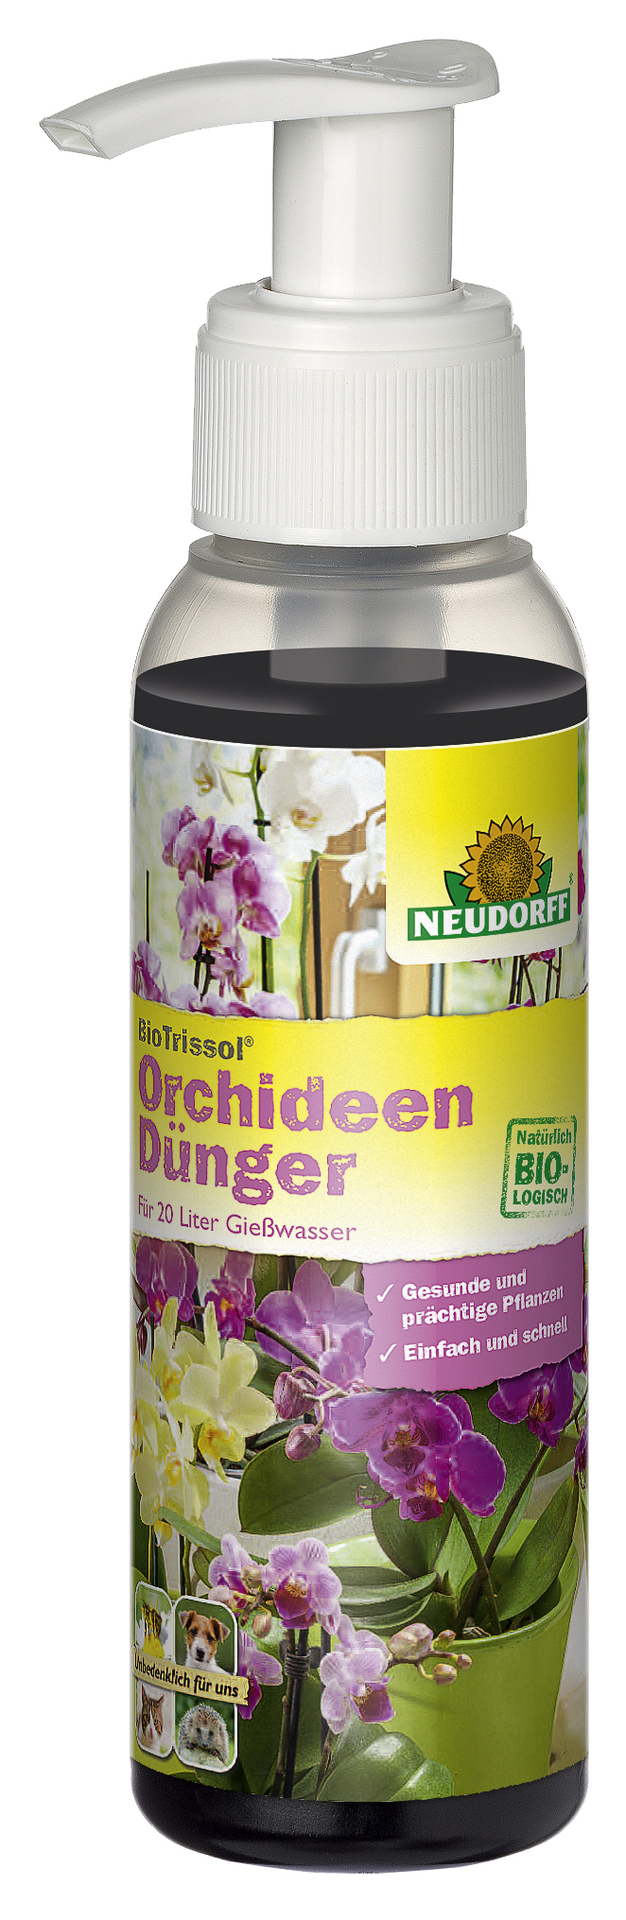 W. Neudorff GmbH KG BioTrissol Plus Orchideendünger 100ml